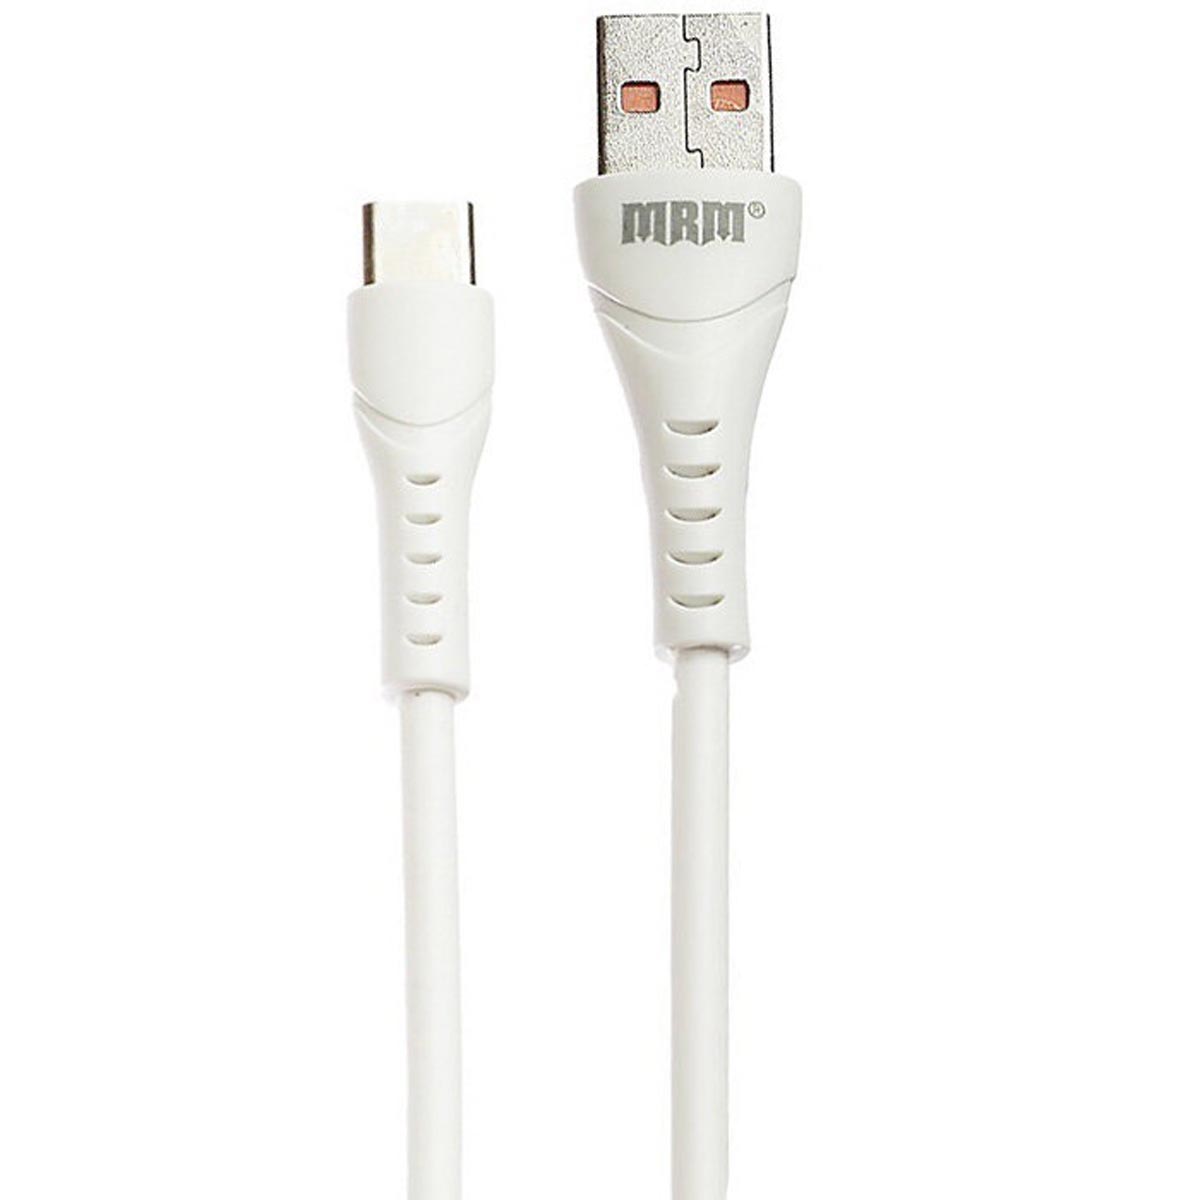 Кабель MRM G04 USB Type C, силикон, морозоустойчивый, длина 30 см, цвет белый